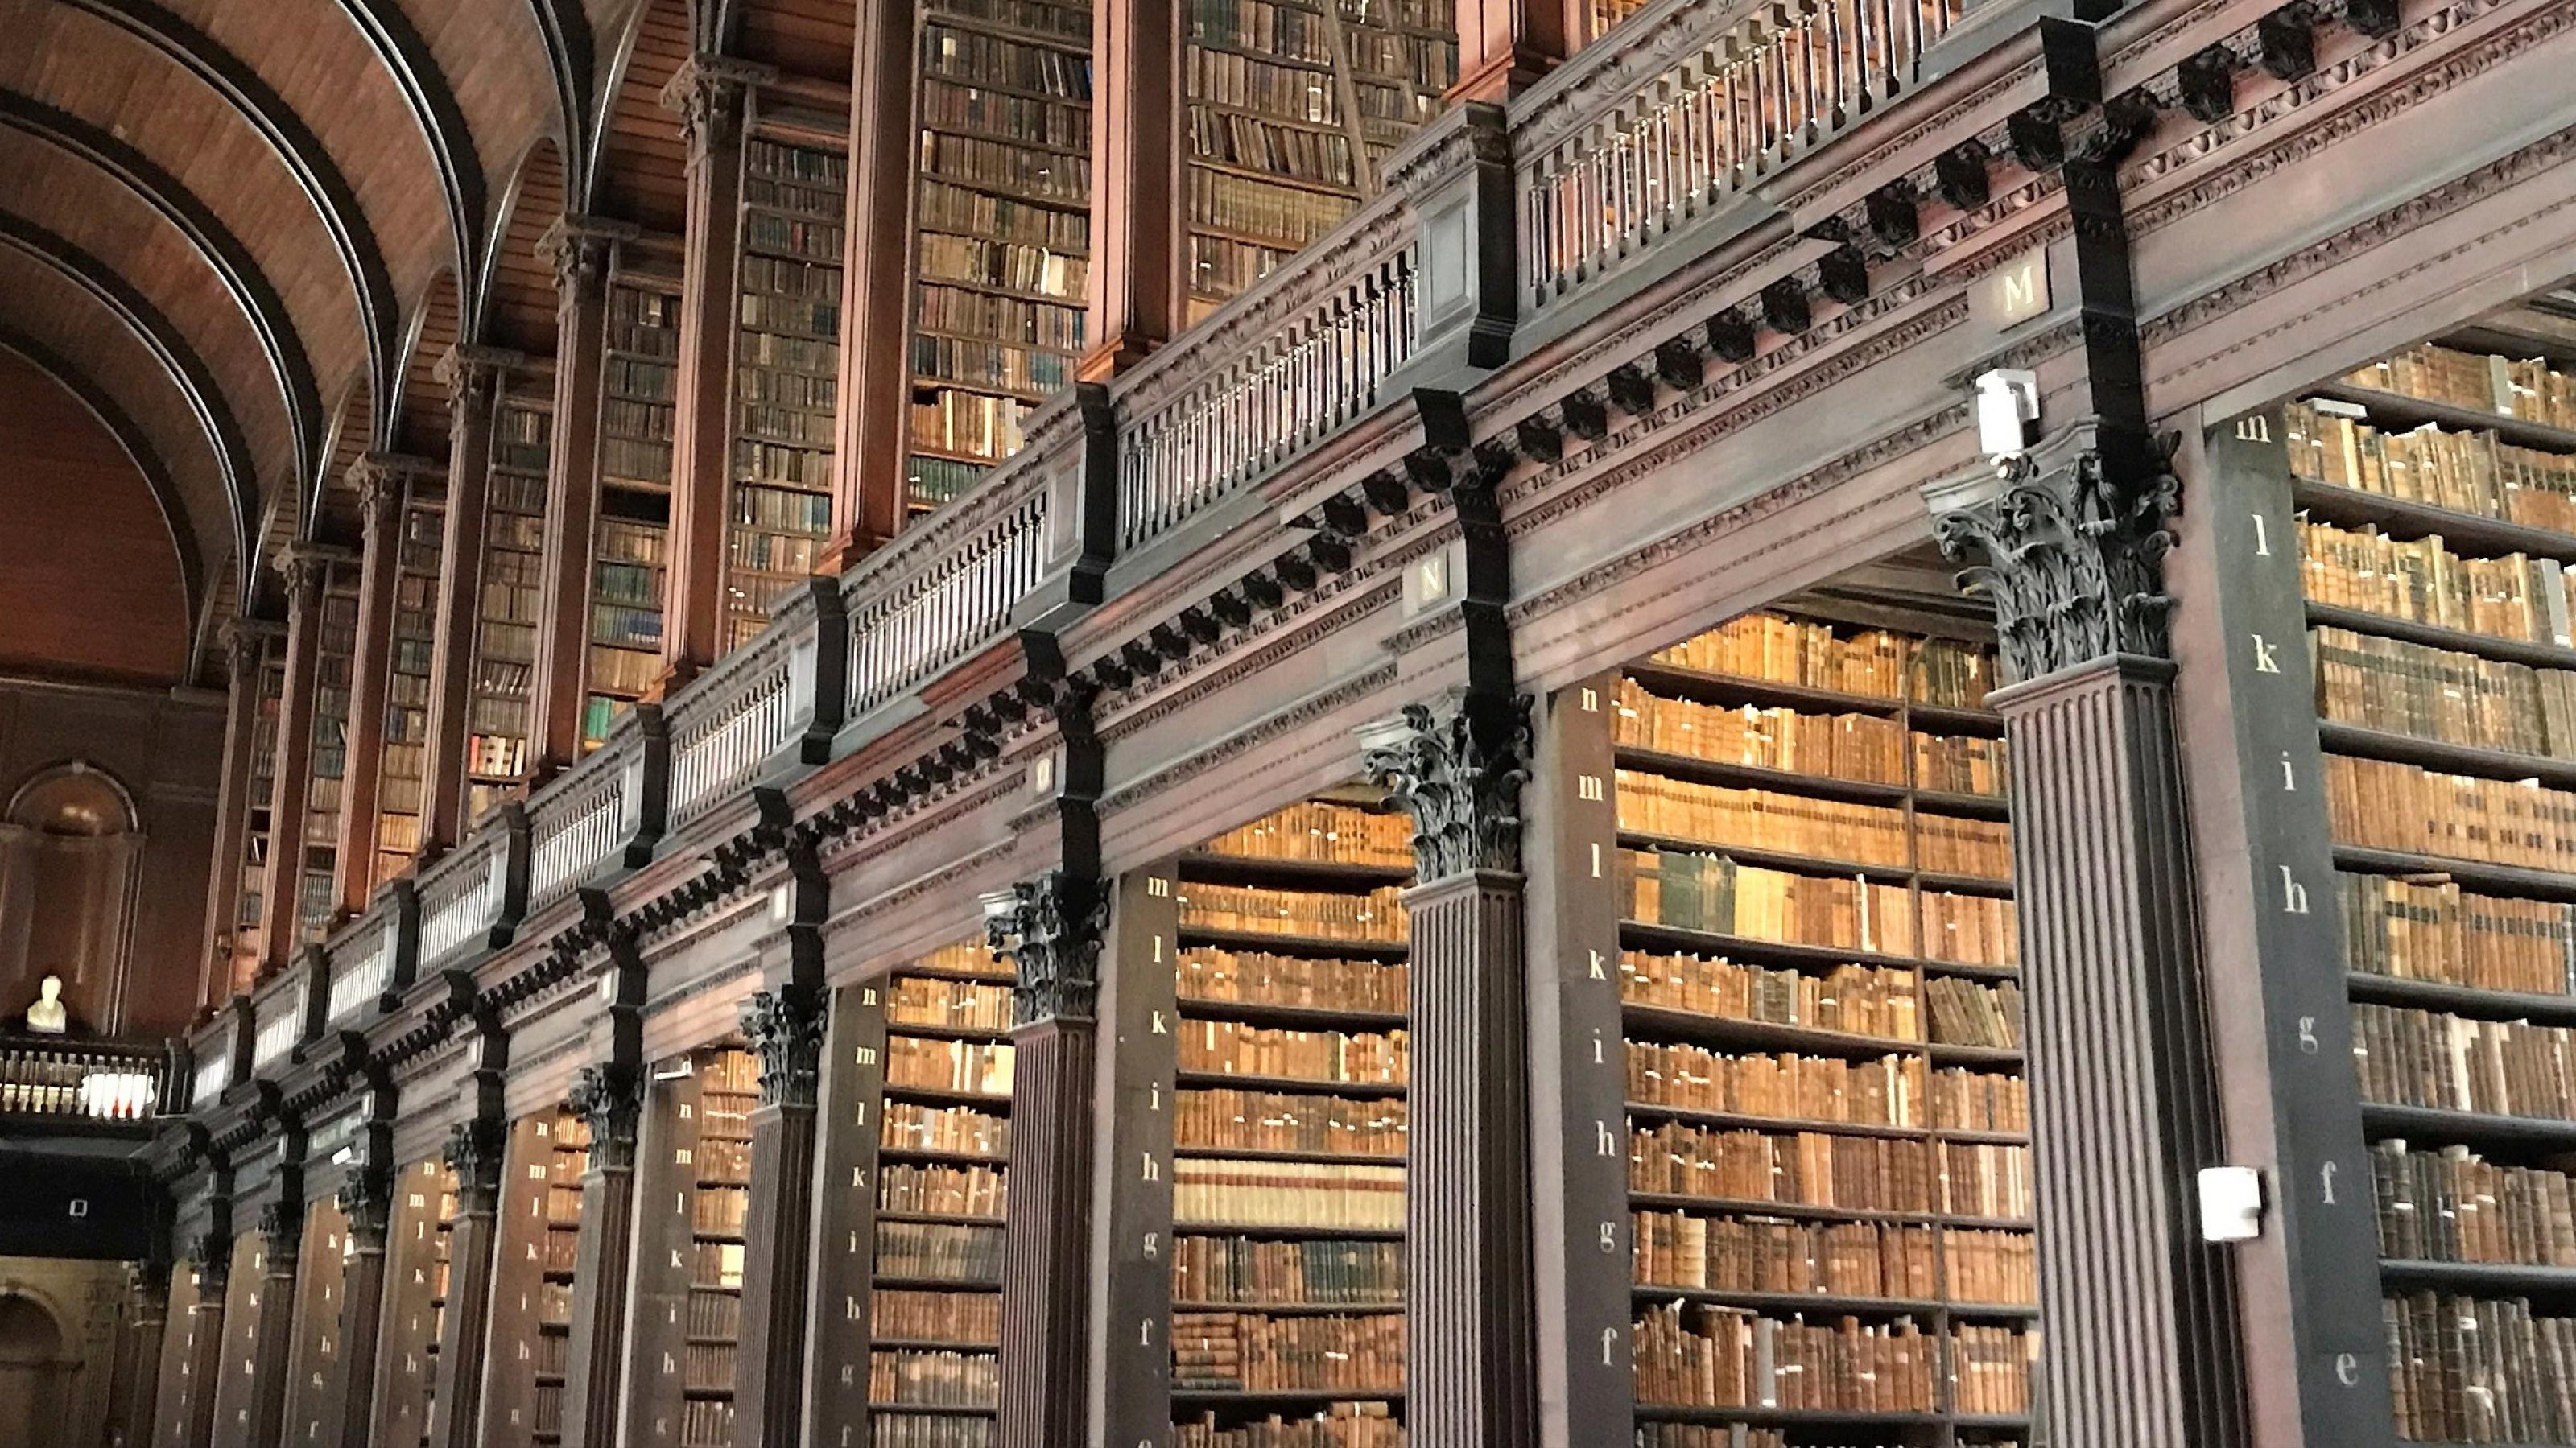 Ein hoher Saal mit zahlreichen Bücherregalen, gefüllt mit kostbaren Büchern. Das Trinity College in Dublin hat eine der ehrwürdigsten Bibliotheken der Welt.